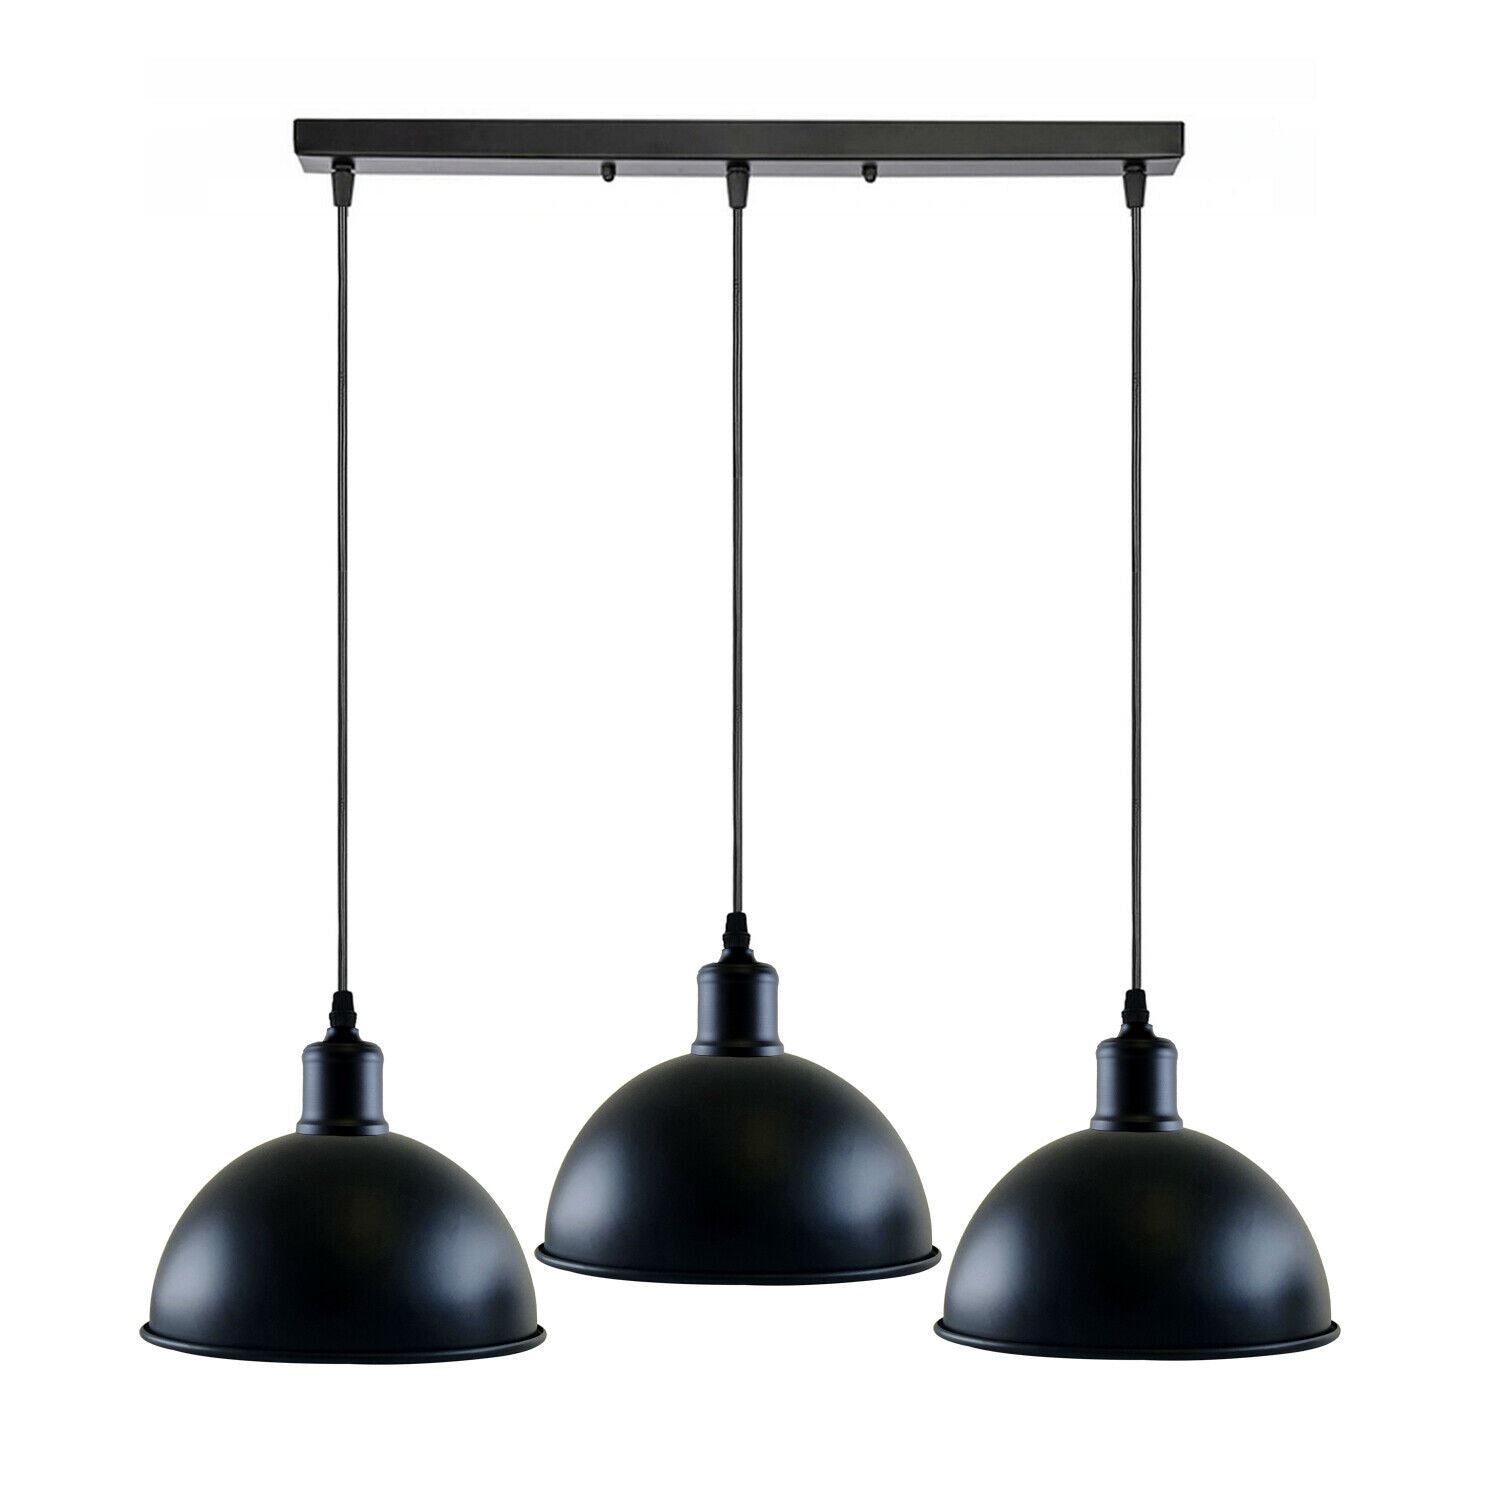 Vintage Industrial 3Head Ceiling Pendant Light Black Hanging Light Metal Dome Shape Shade Indoor Light Fitting~1242 - LEDSone UK Ltd